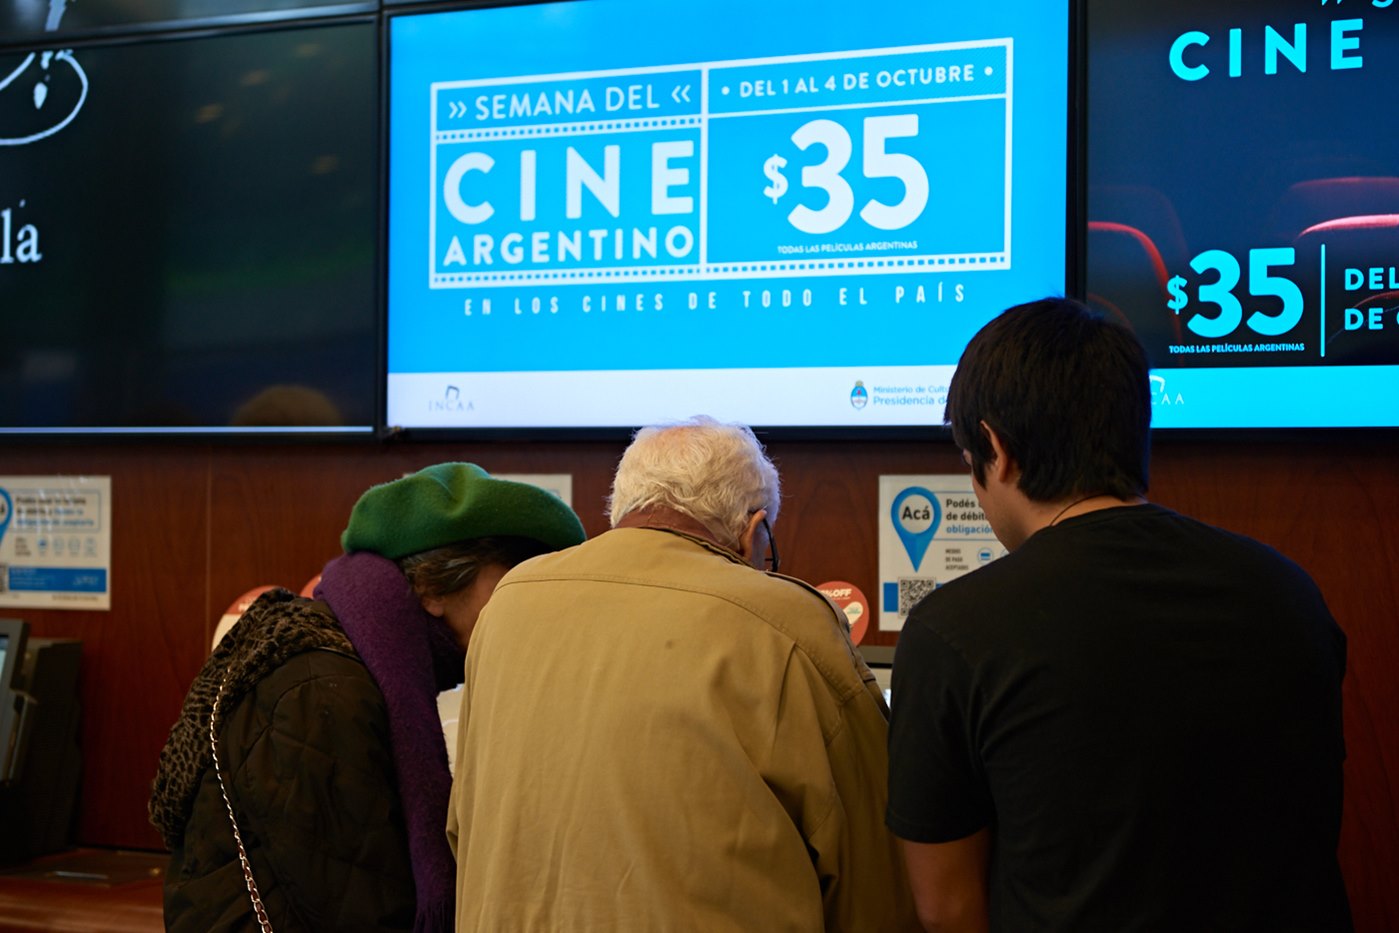 La Semana del Cine Argentino tuvo más de 270 mil espectadores